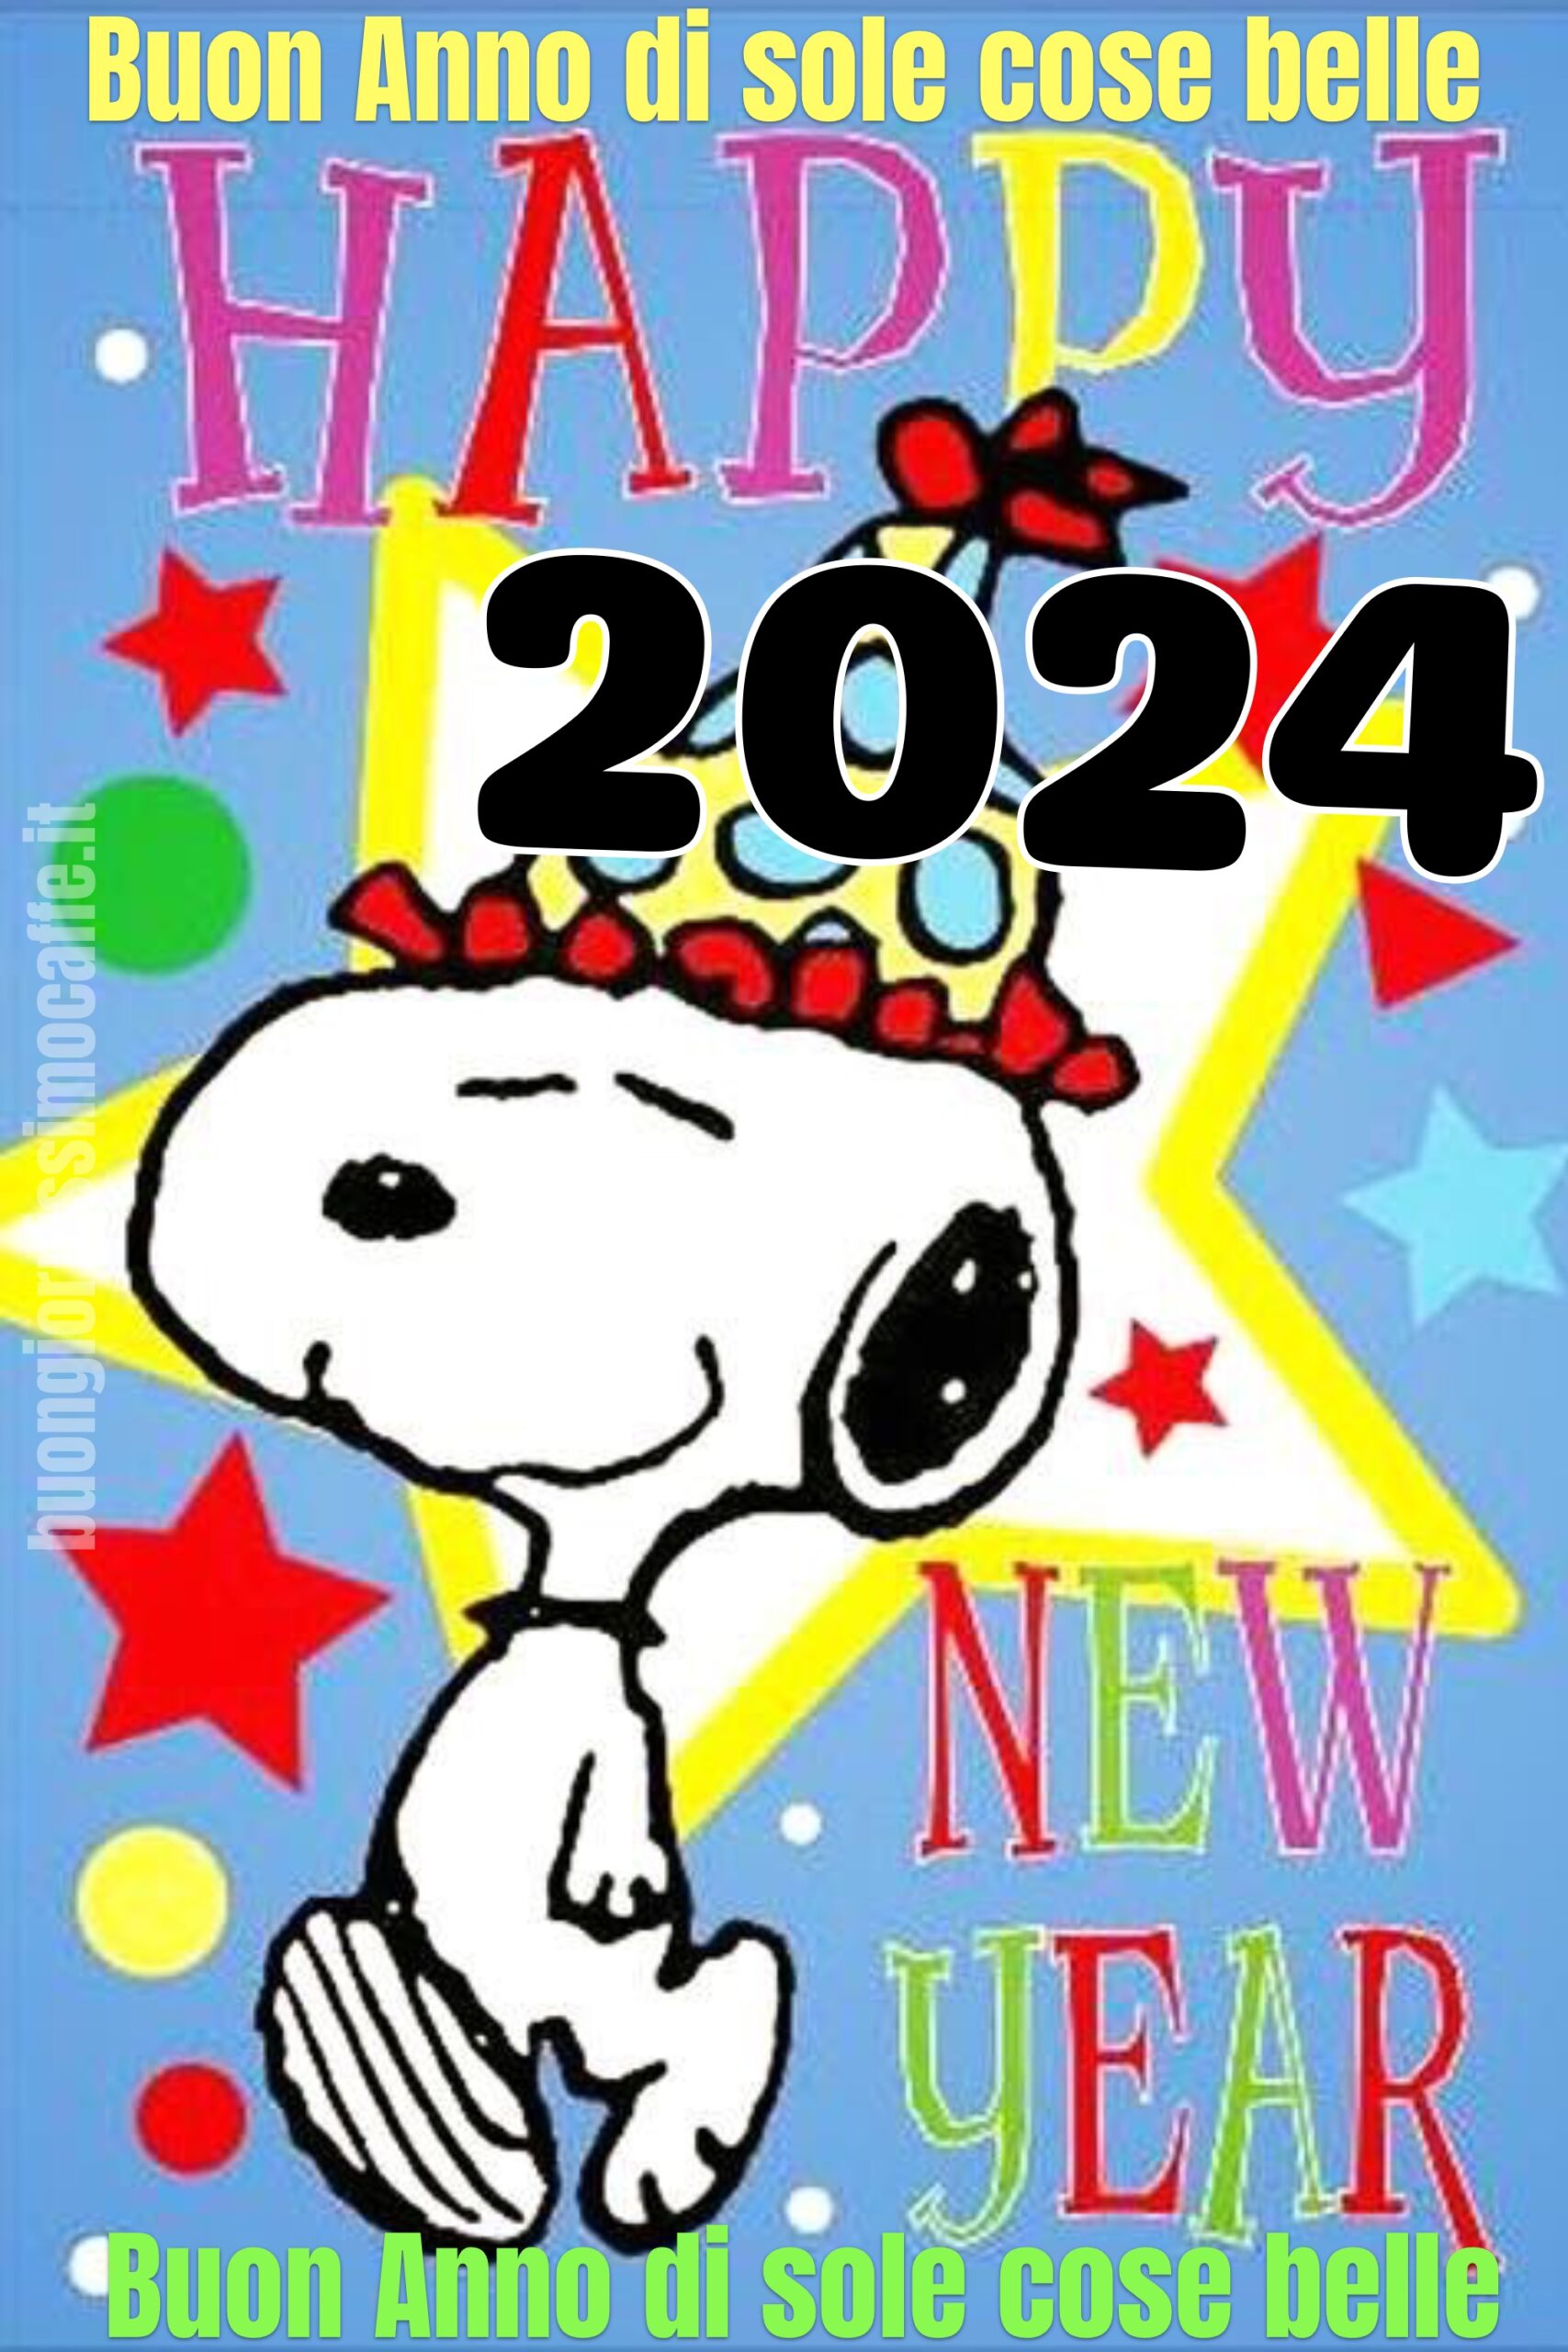 Buon Anno di sole cose belle Snoopy 2024